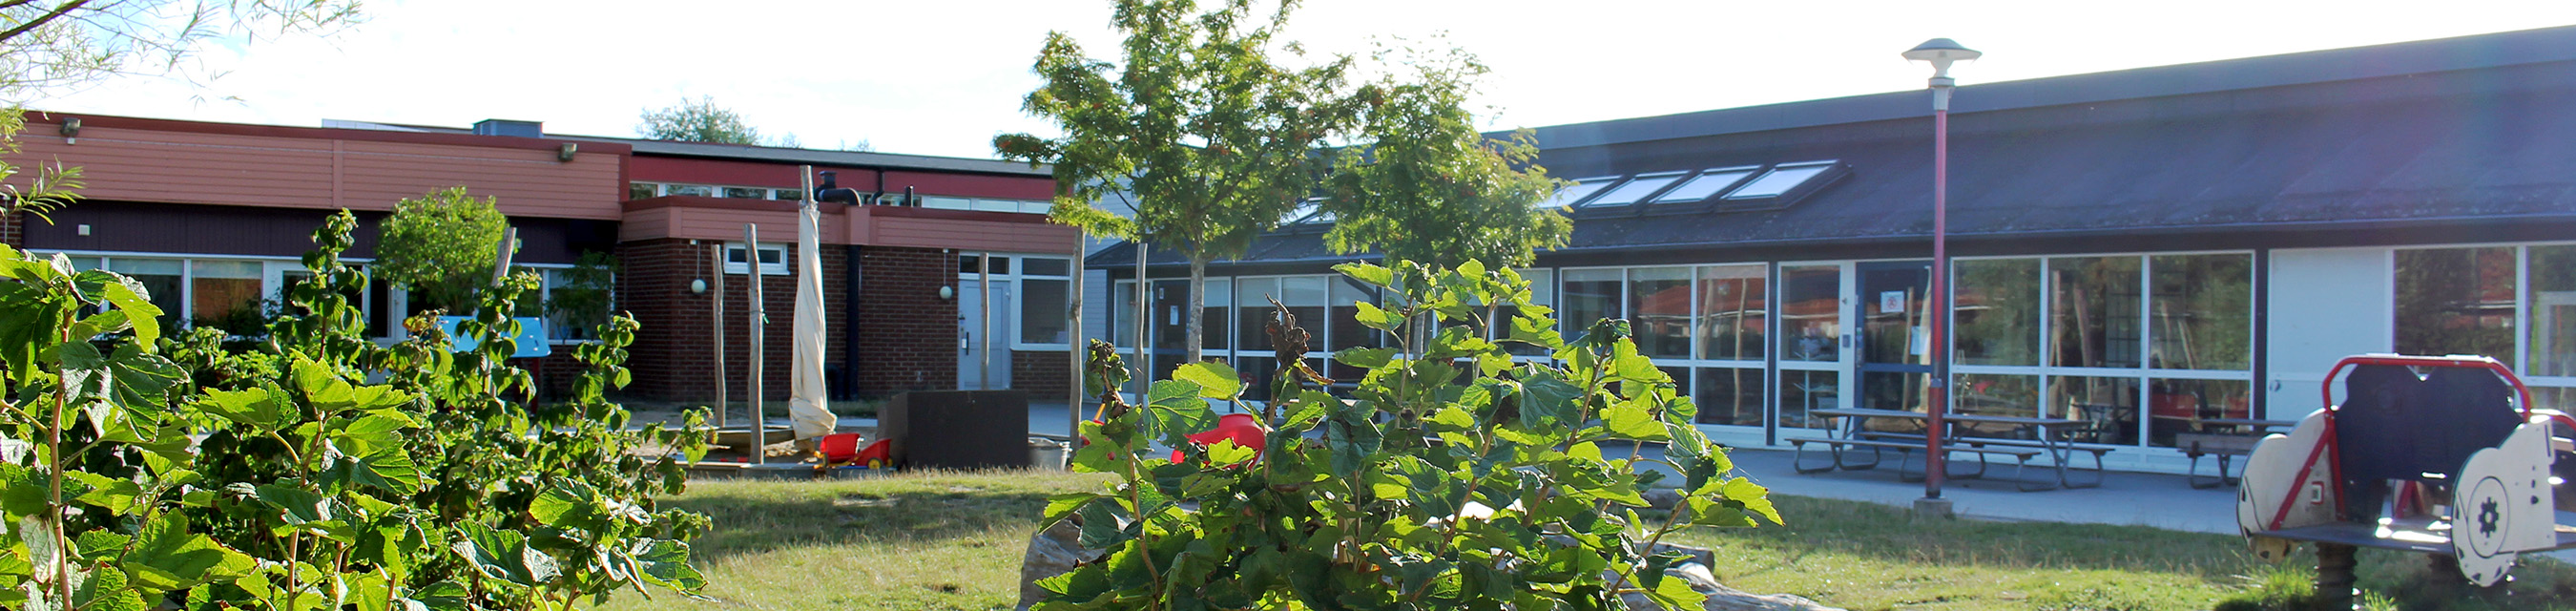 Mossängens förskola är byggd i ett plan och har sex avdelningar.